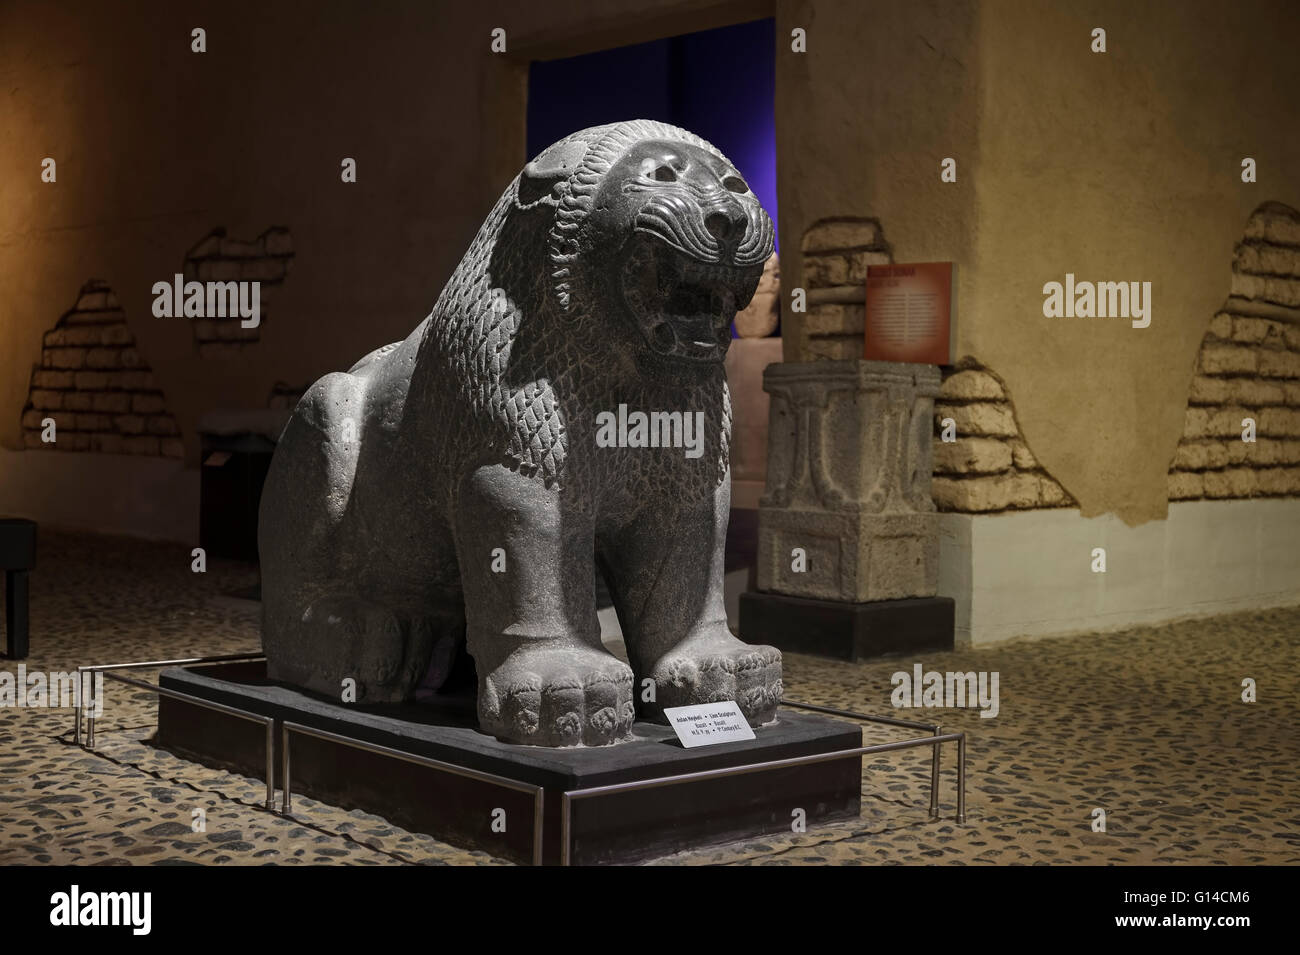 Hatay, Turquie - 21 Avril 2016 : Nouveau Musée d'Archéologie de Hatay, Turquie. Statue de lion rugissant. Banque D'Images